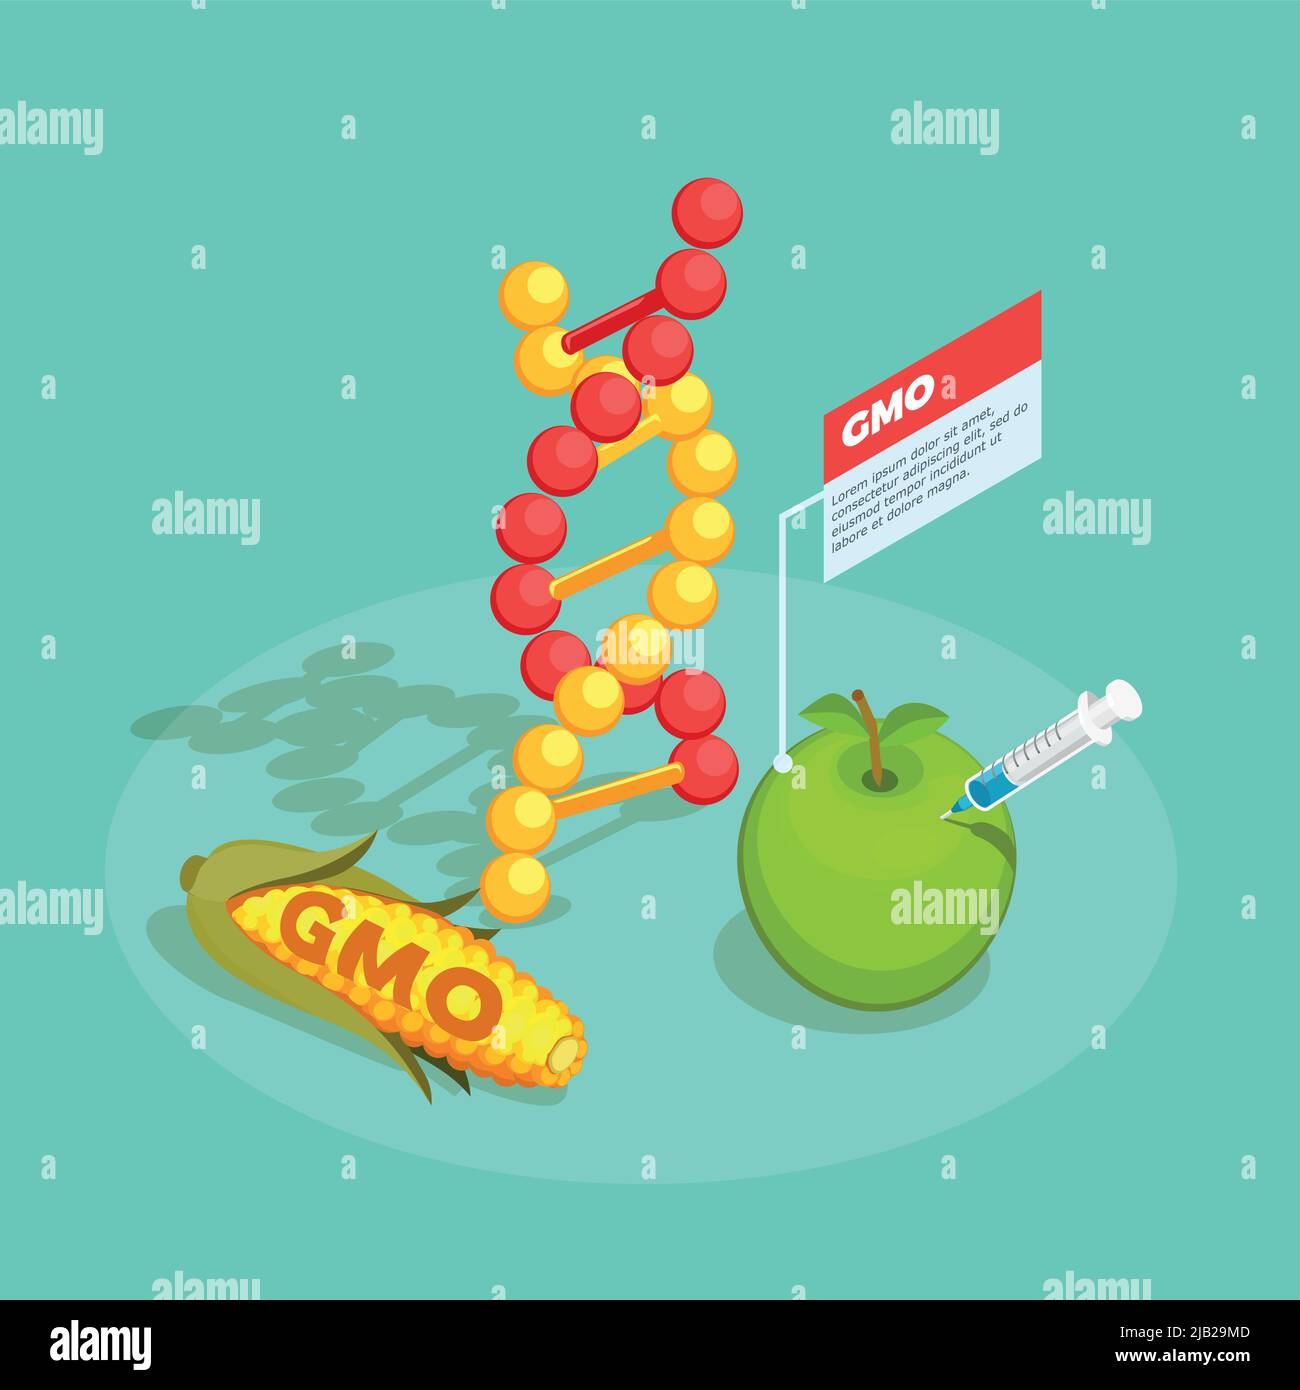 Composition isométrique alimentaire OGM sur fond turquoise avec molécule d'adn, maïs génétiquement modifié et illustration du vecteur de pomme Illustration de Vecteur